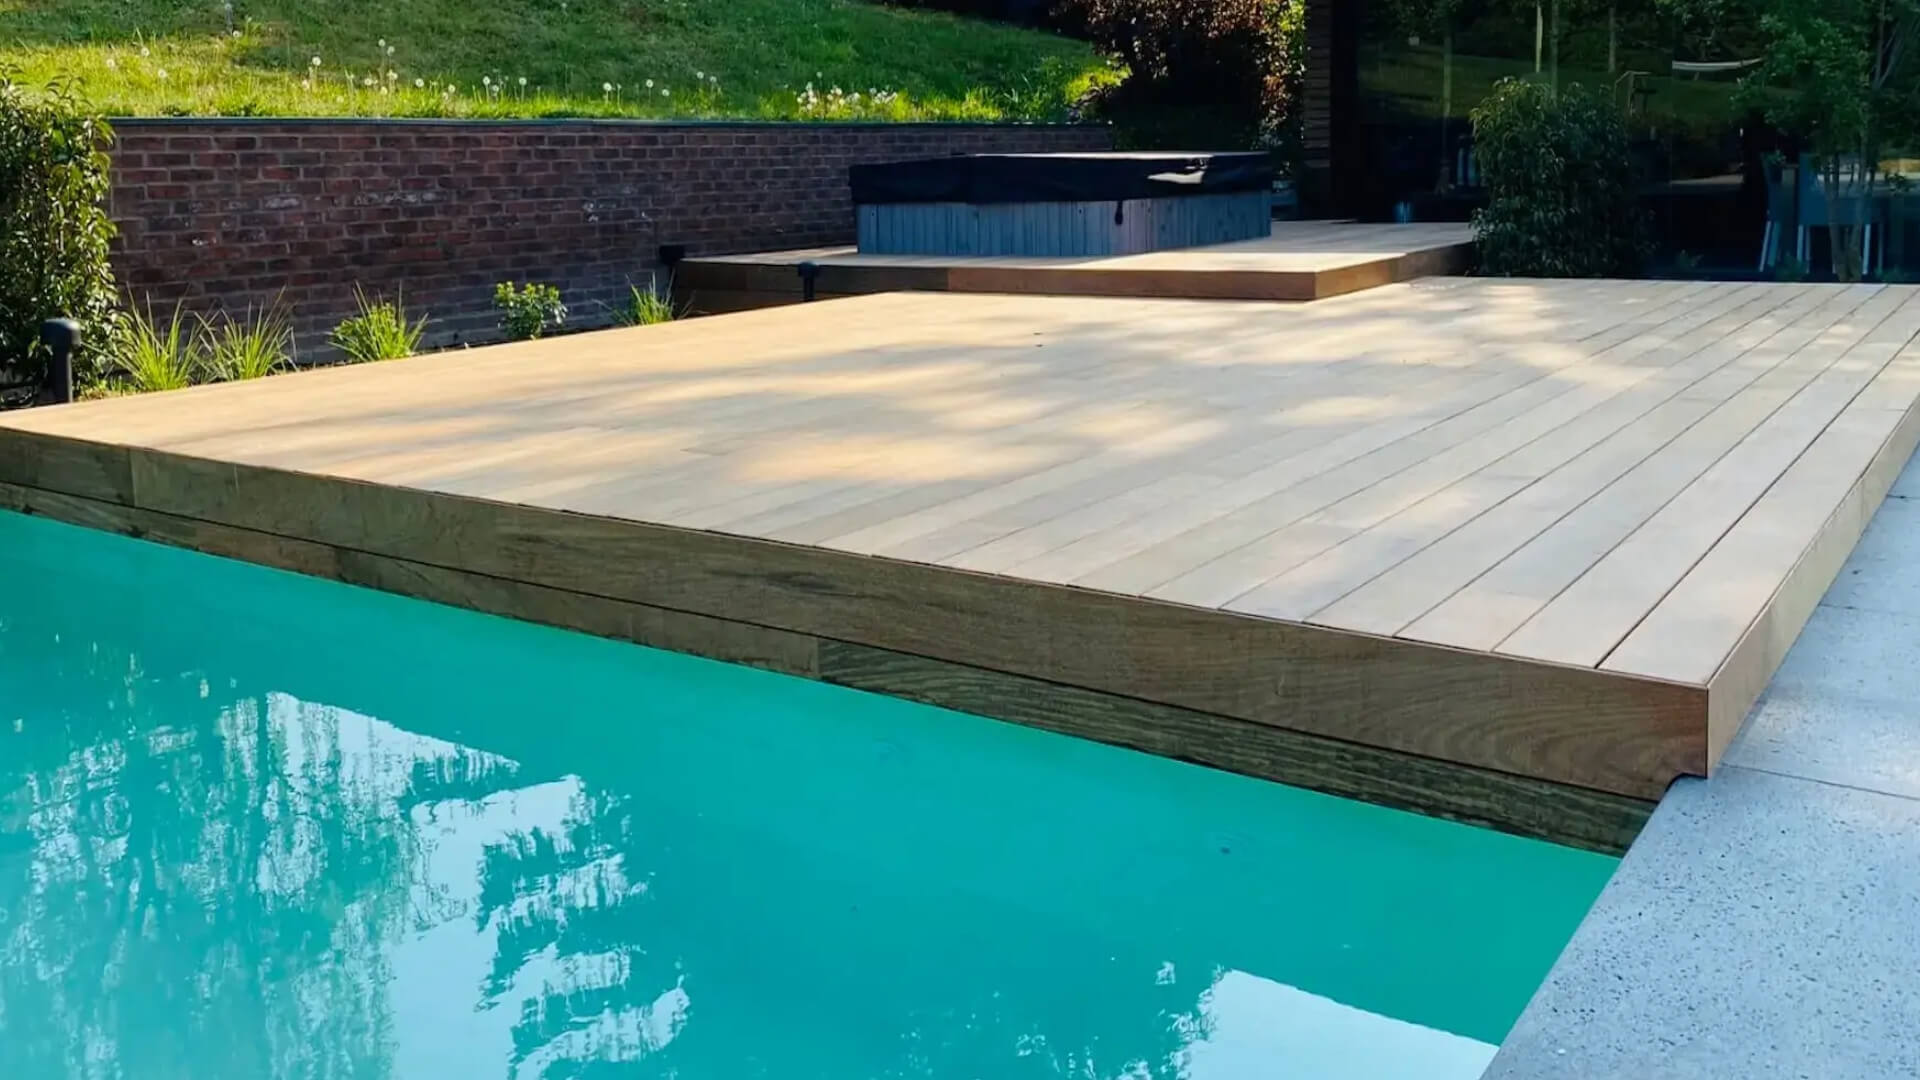 Buitenparket vloer van IPE hout in combinatie met een zwembad